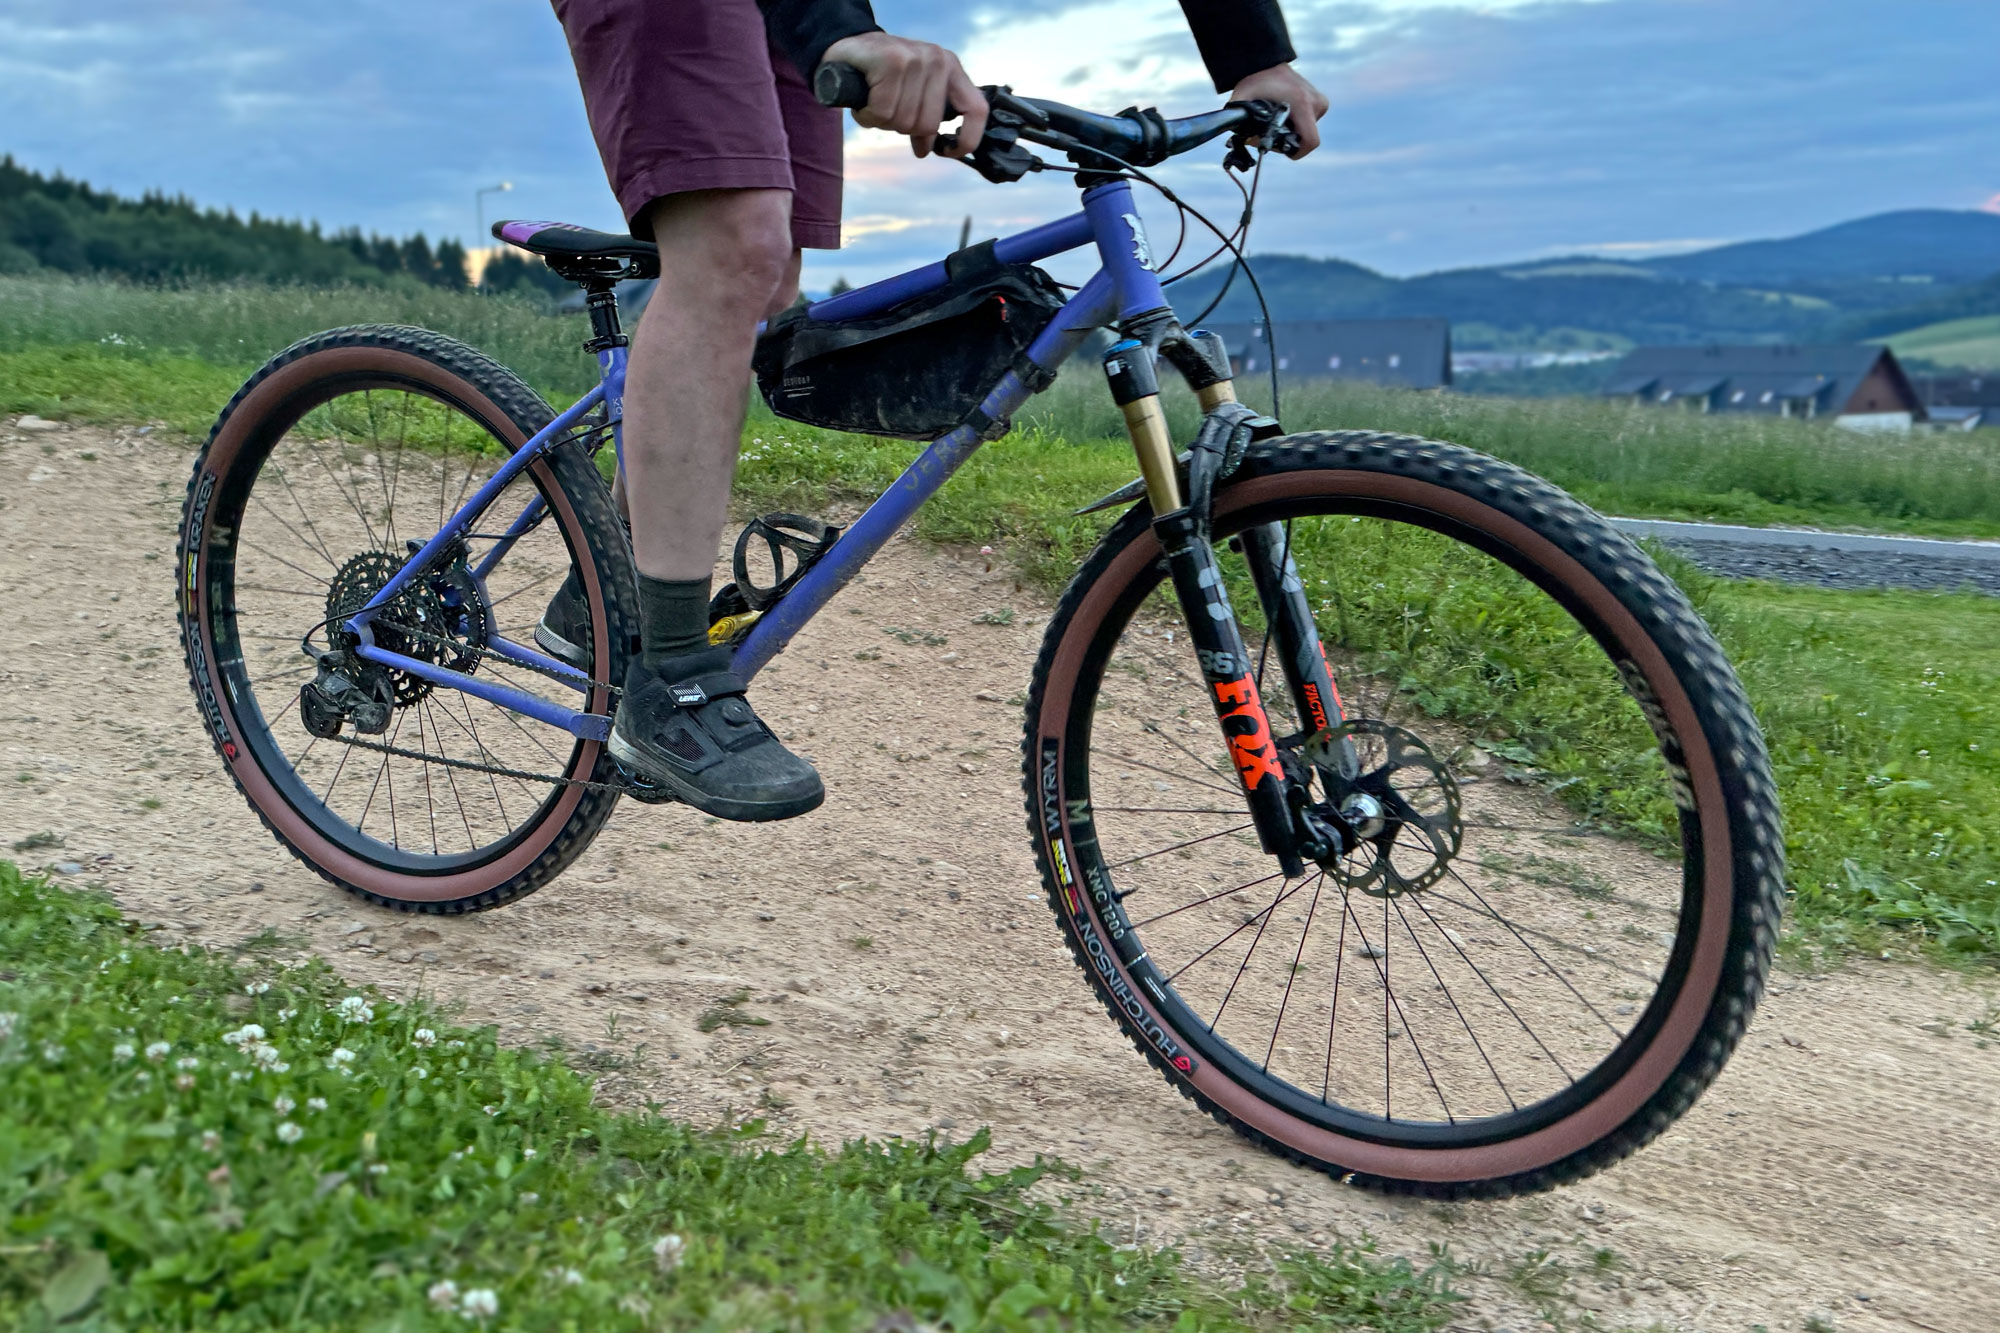 All-new DT Swiss XMC 1200 lightweight carbon all-mountain bike wheels, bike park riding